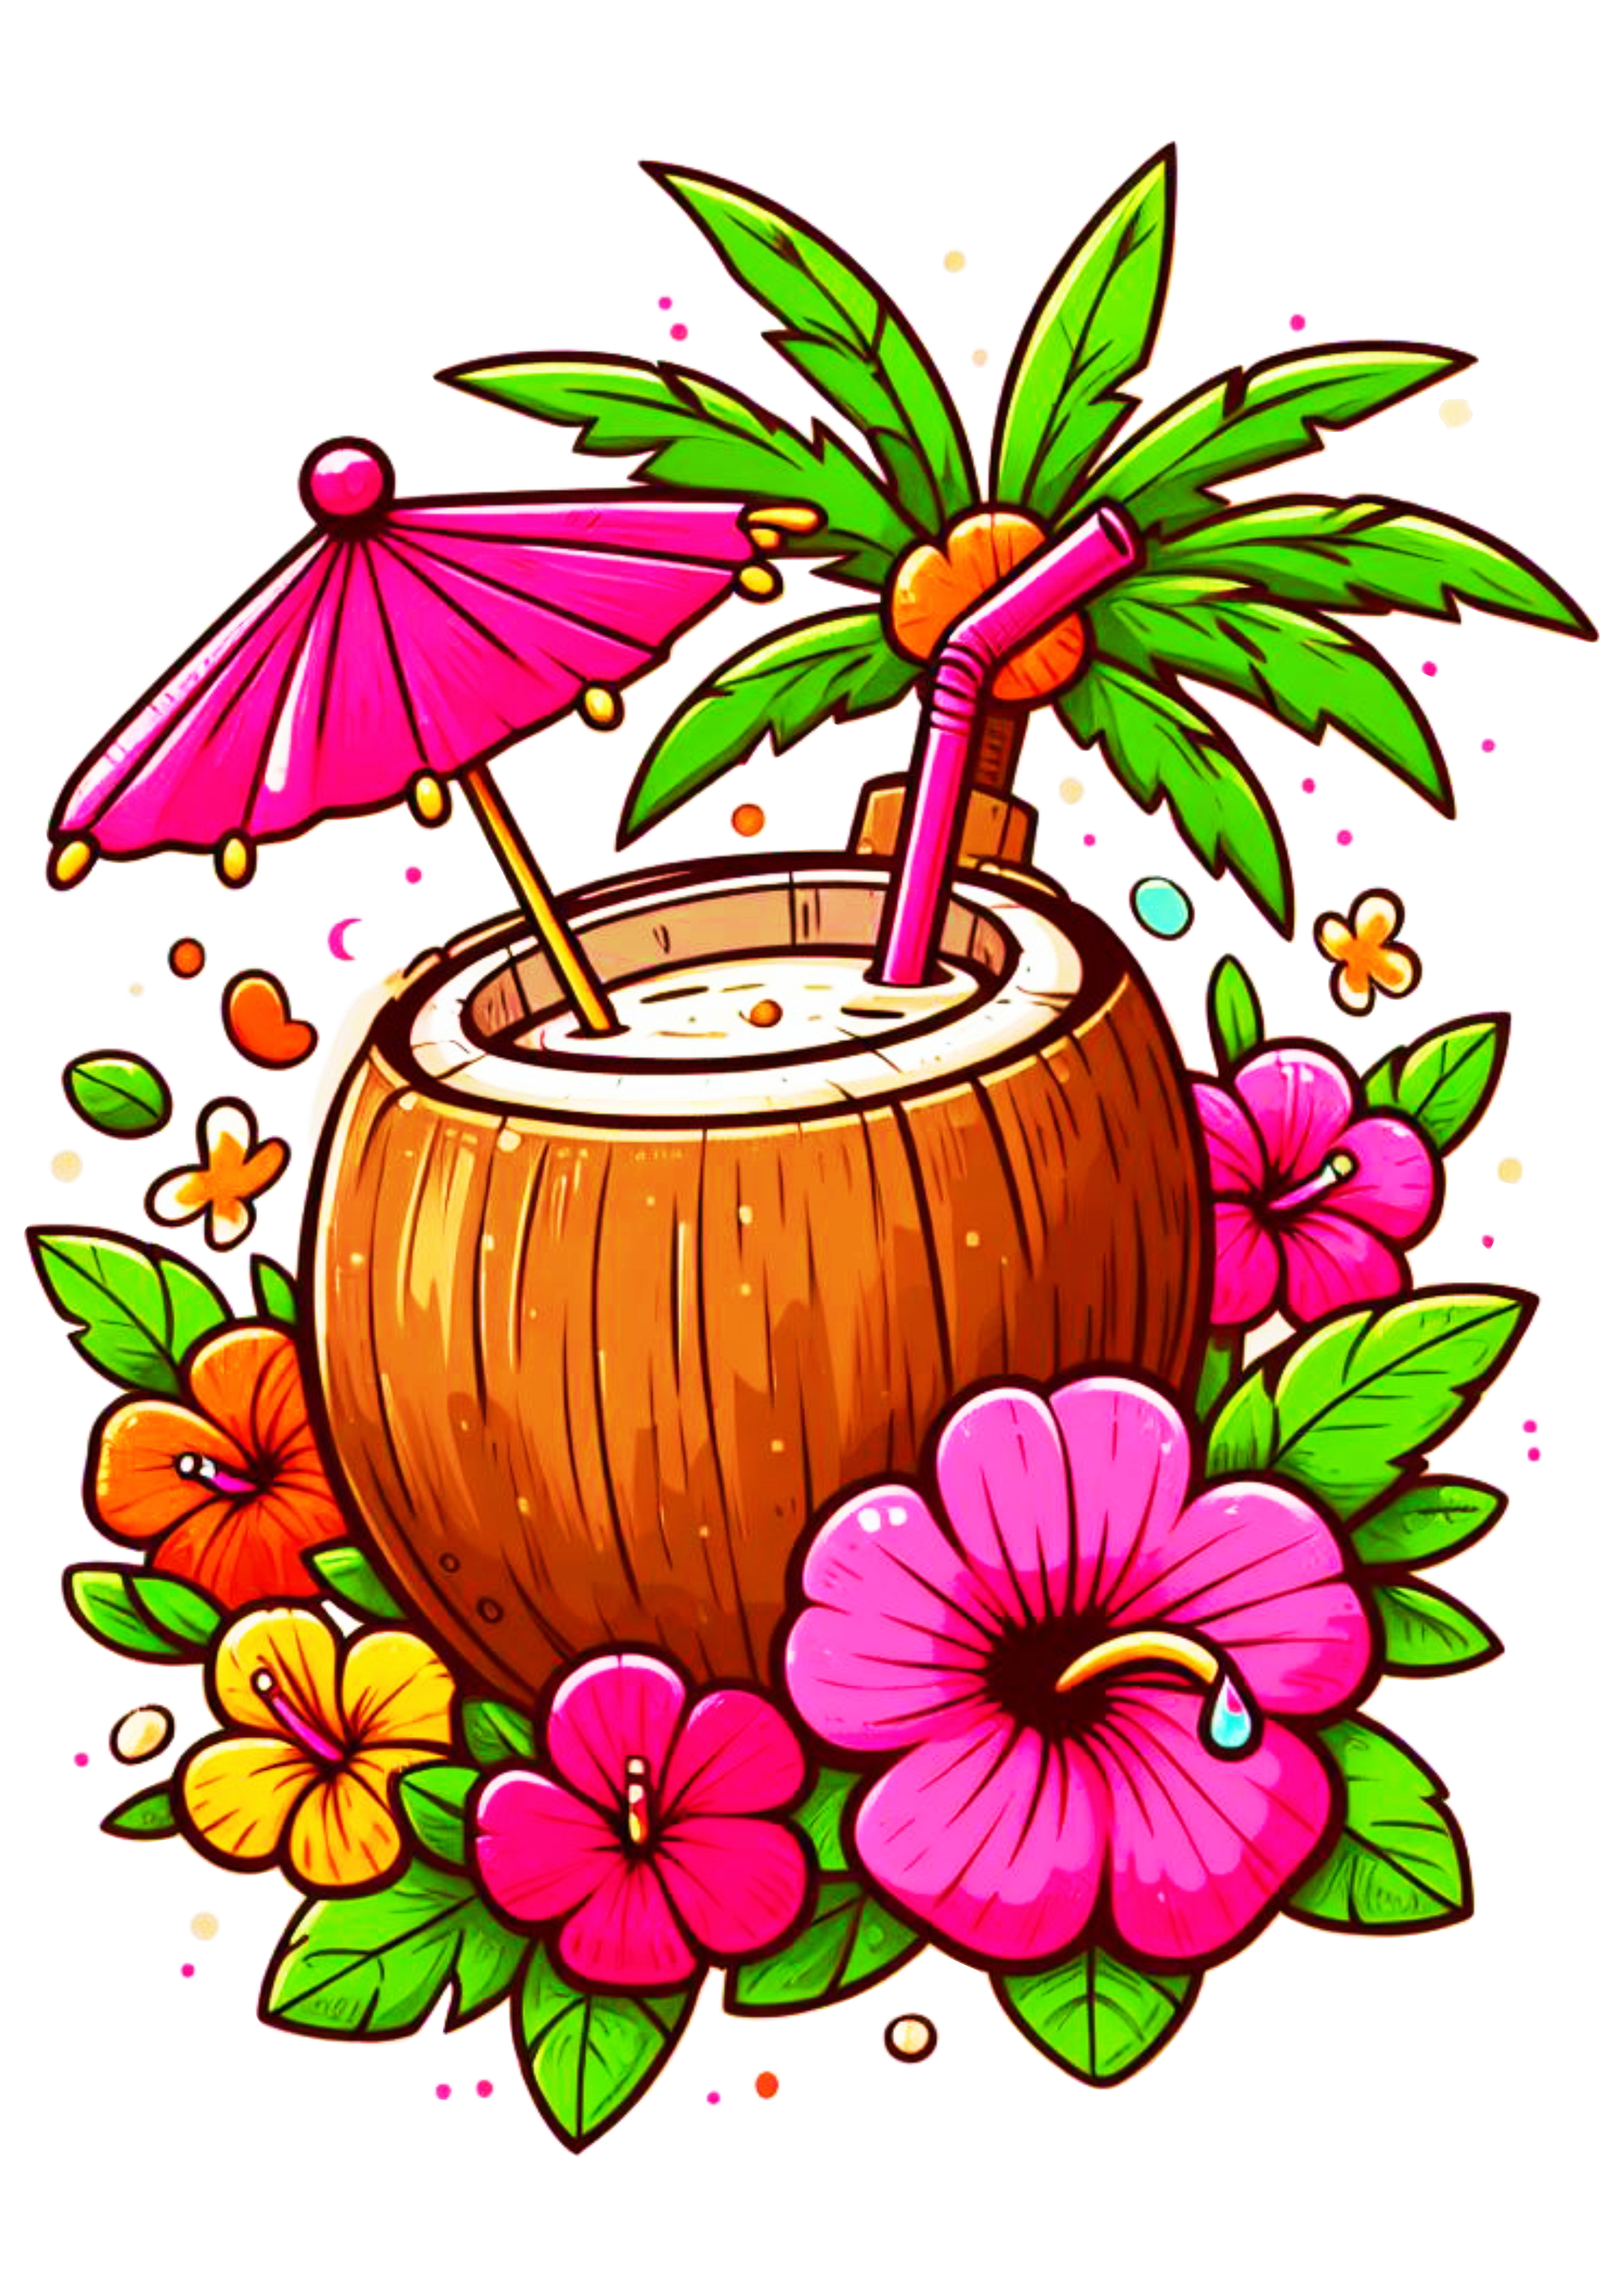 Tardezinha bebida tropical água de coco artes gráficas ilustração imagem fundo transparente drink flores png